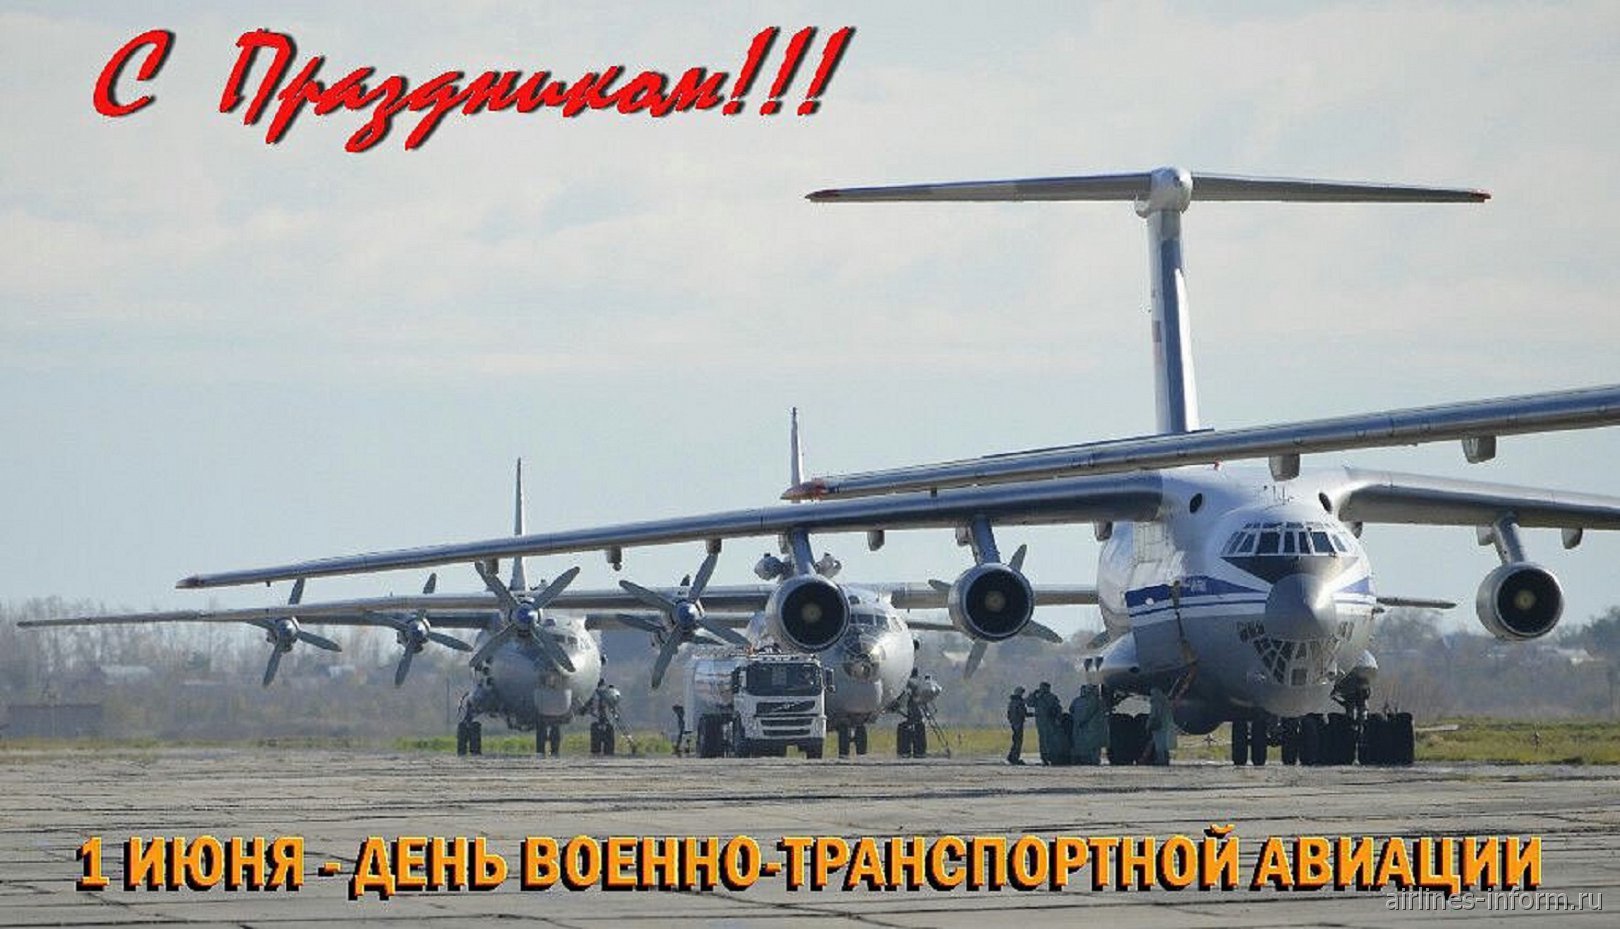 1 Июня — день военно-транспортной авиации (ВТА) России.